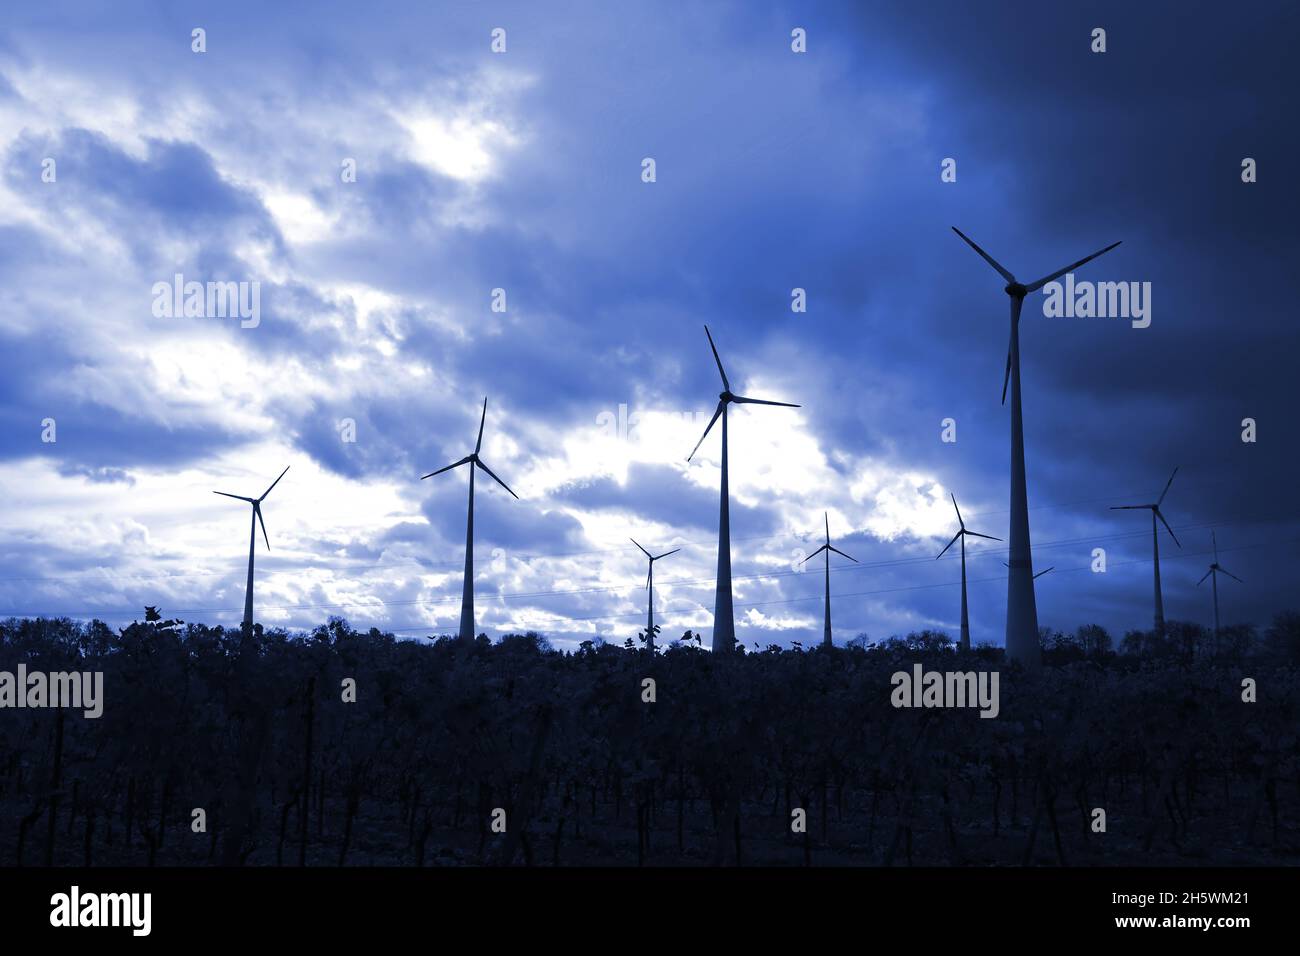 Windmühlen, die Strom produzieren, werden in einem dunkelblauen Himmel dargestellt Stockfoto